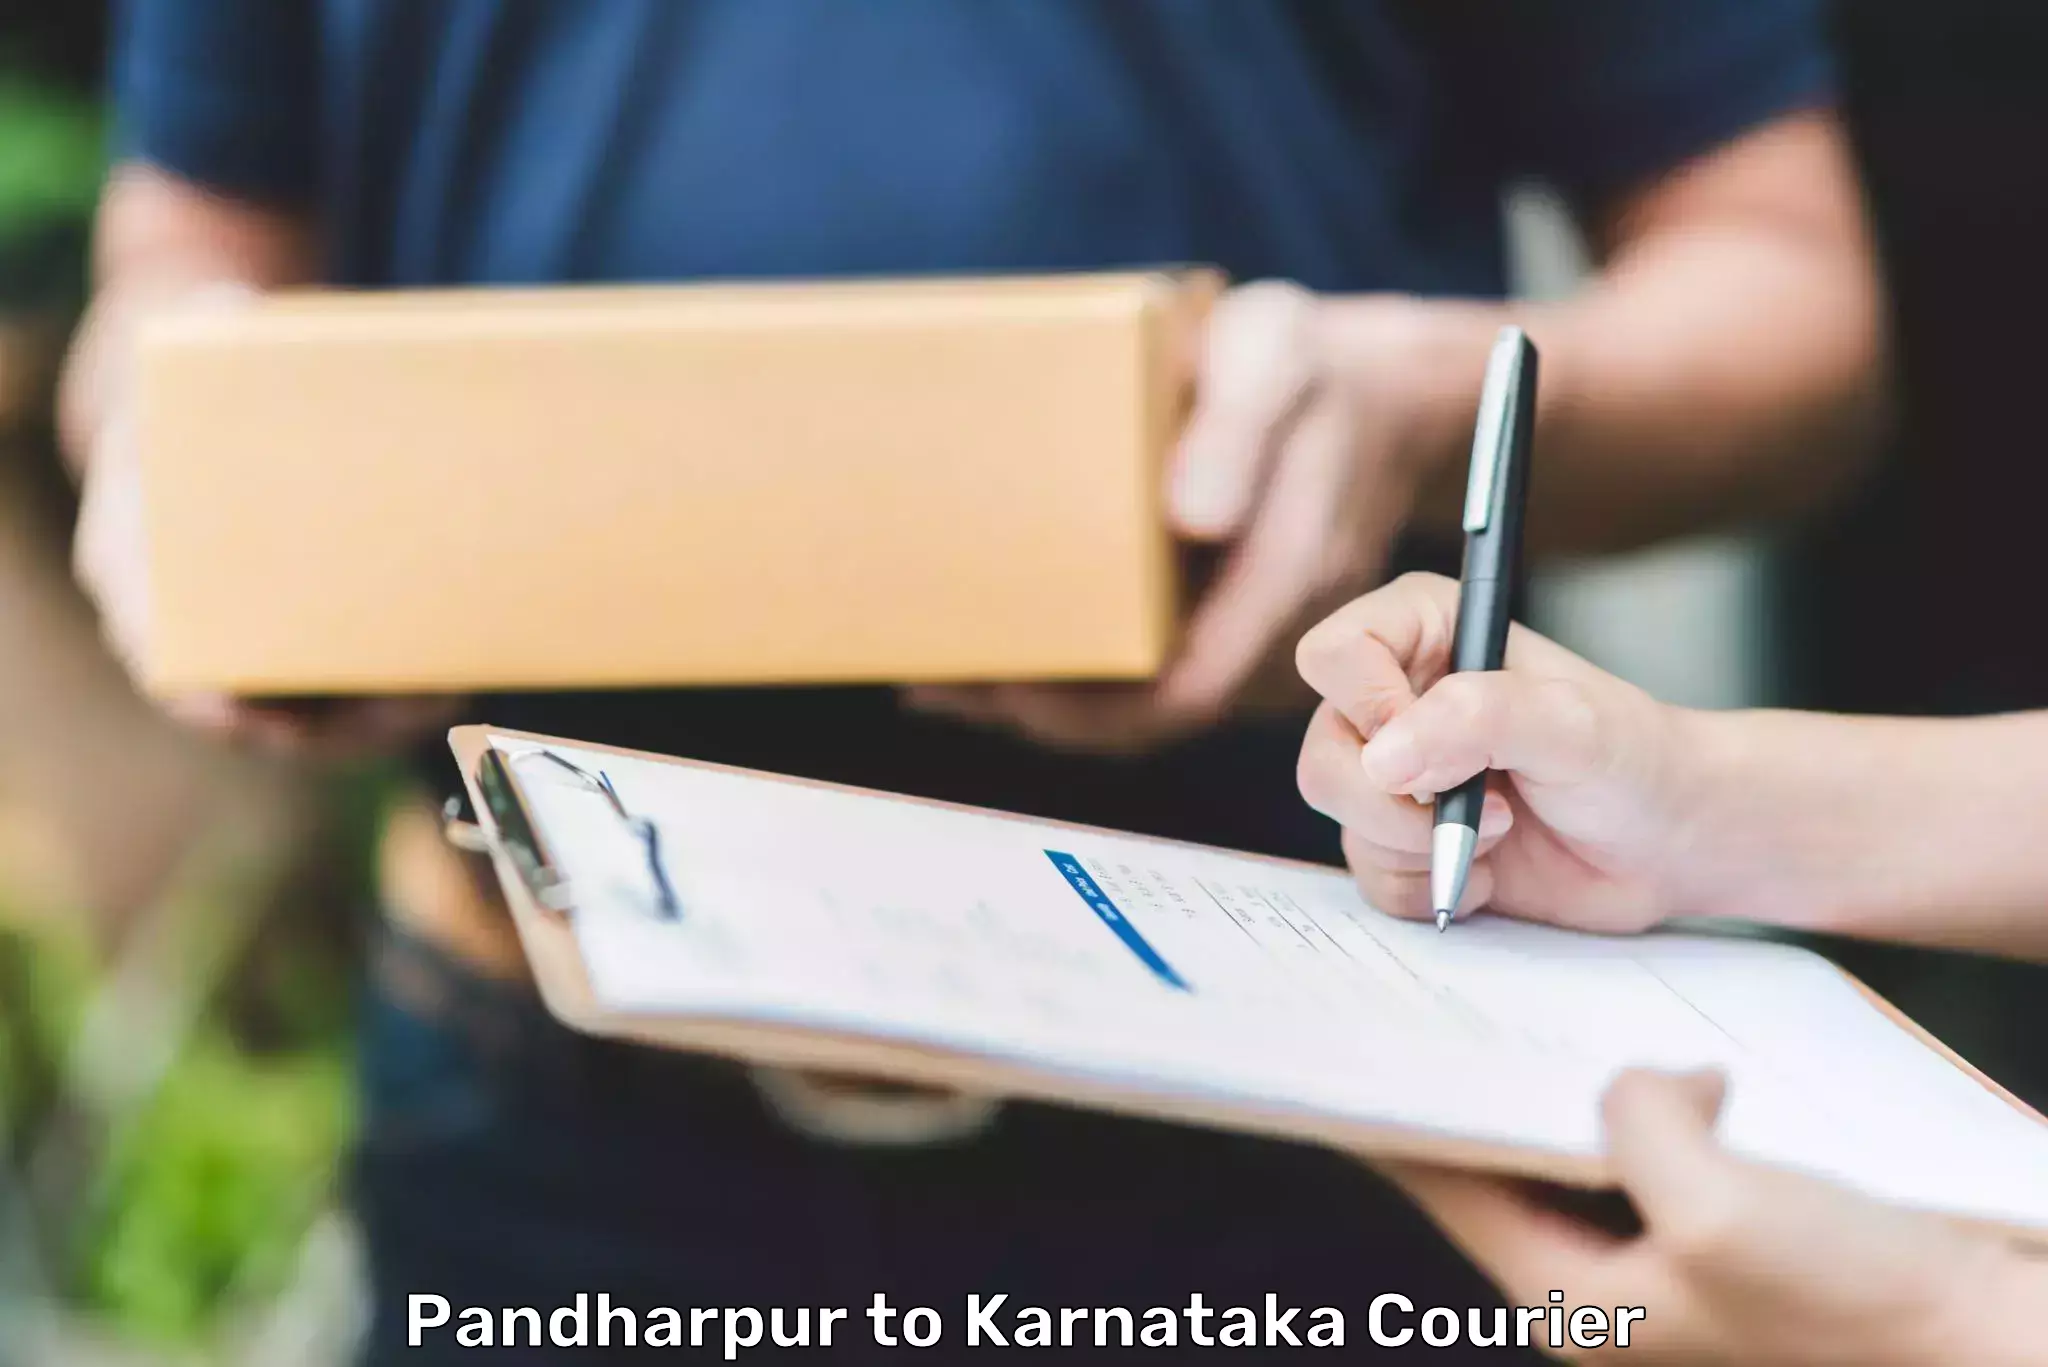 Smart shipping technology Pandharpur to Karnataka